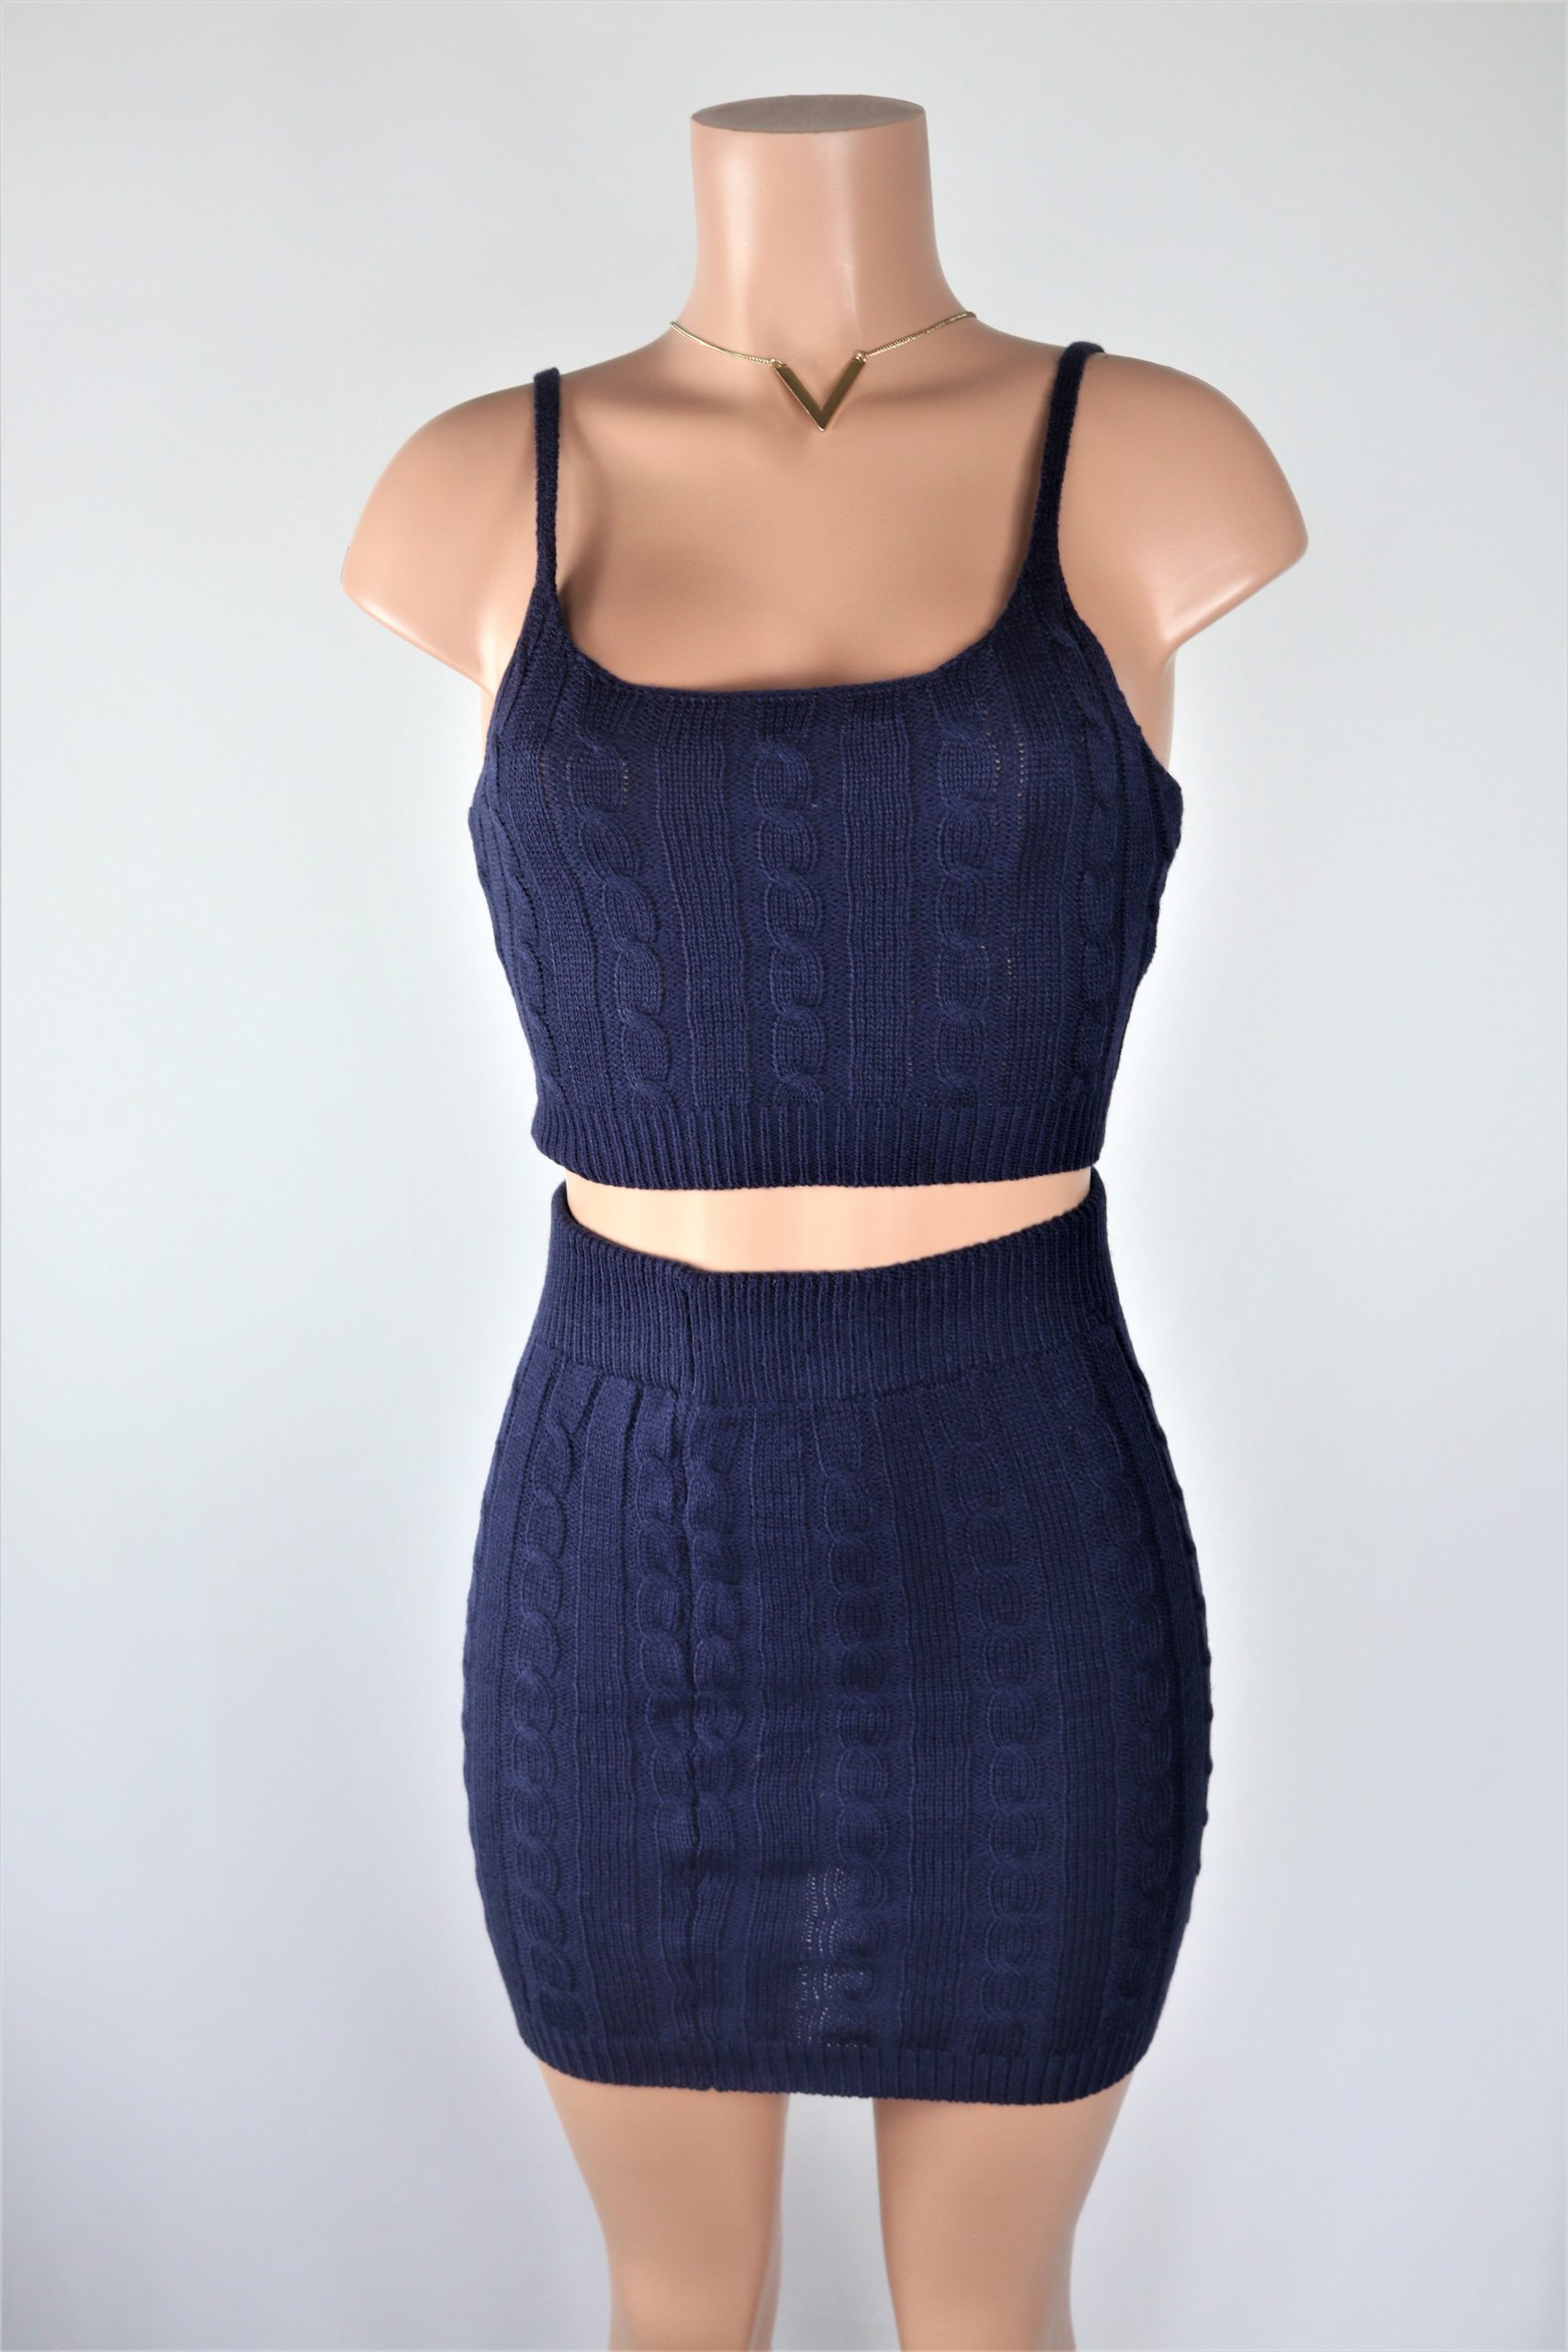 Blue Cable Knit Skirt Set - Navy Blue crop top high waist mini skirt set.